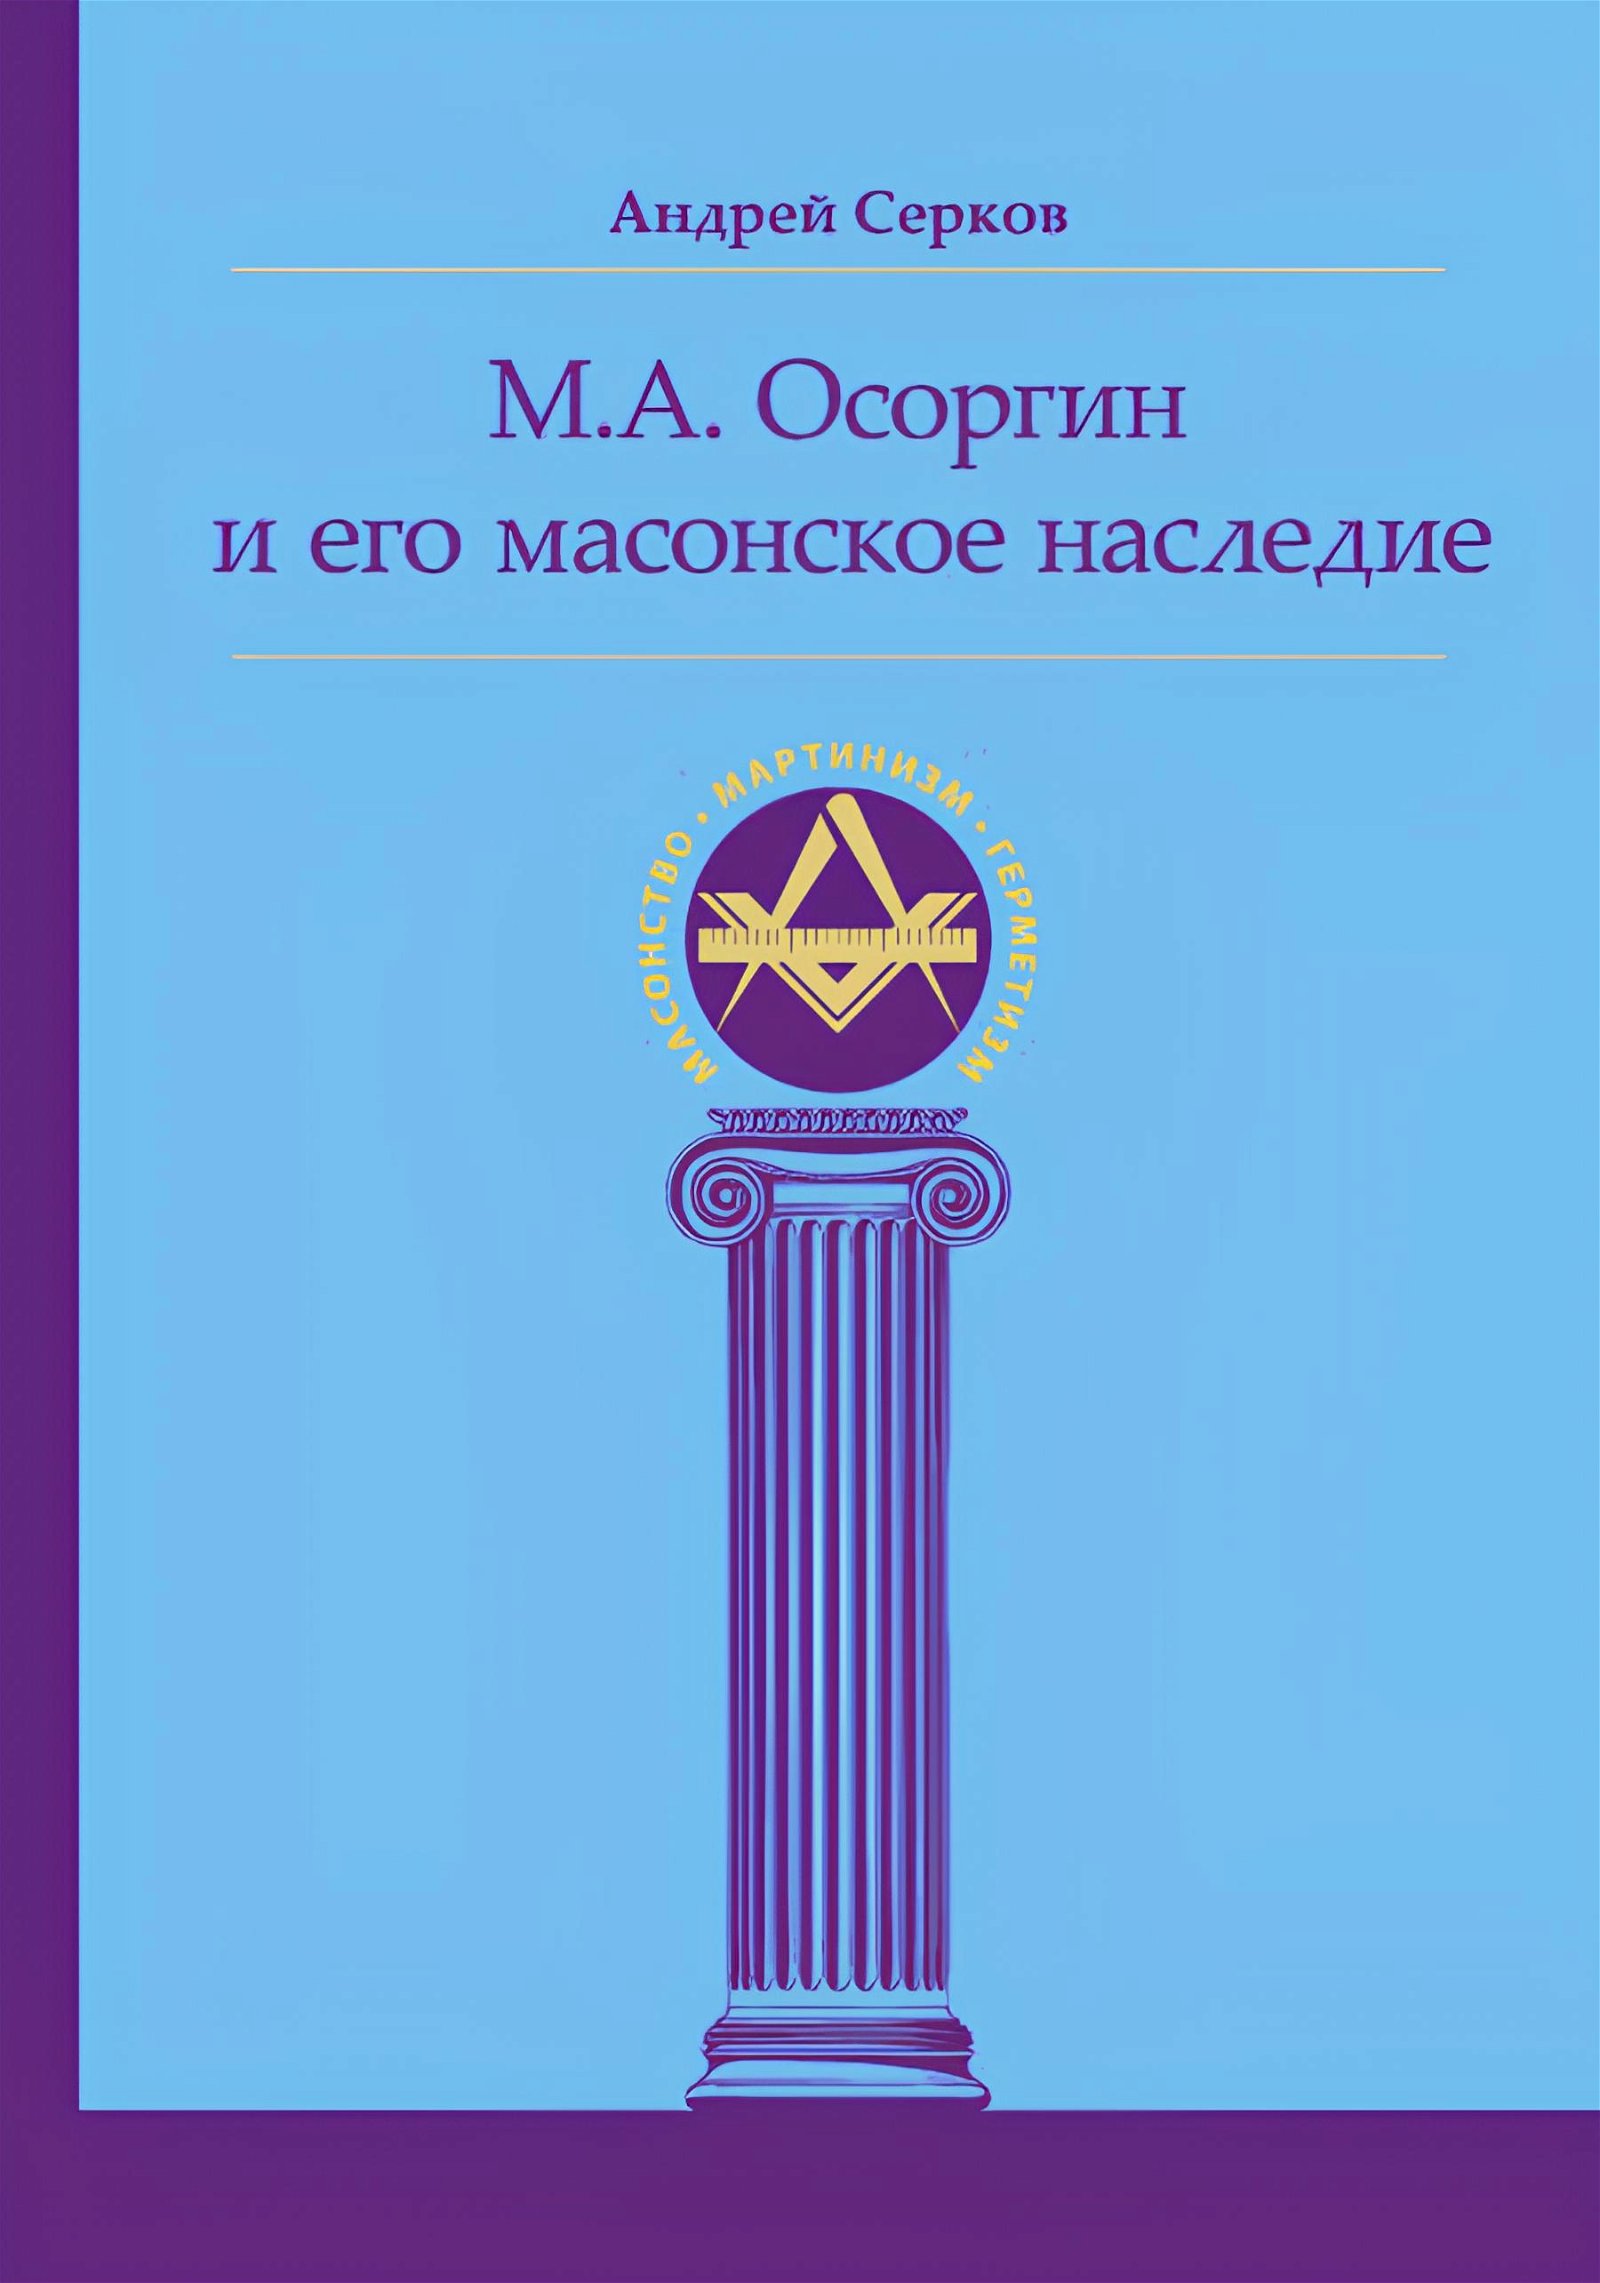 М. А. Осоргин и его масонское наследие. 